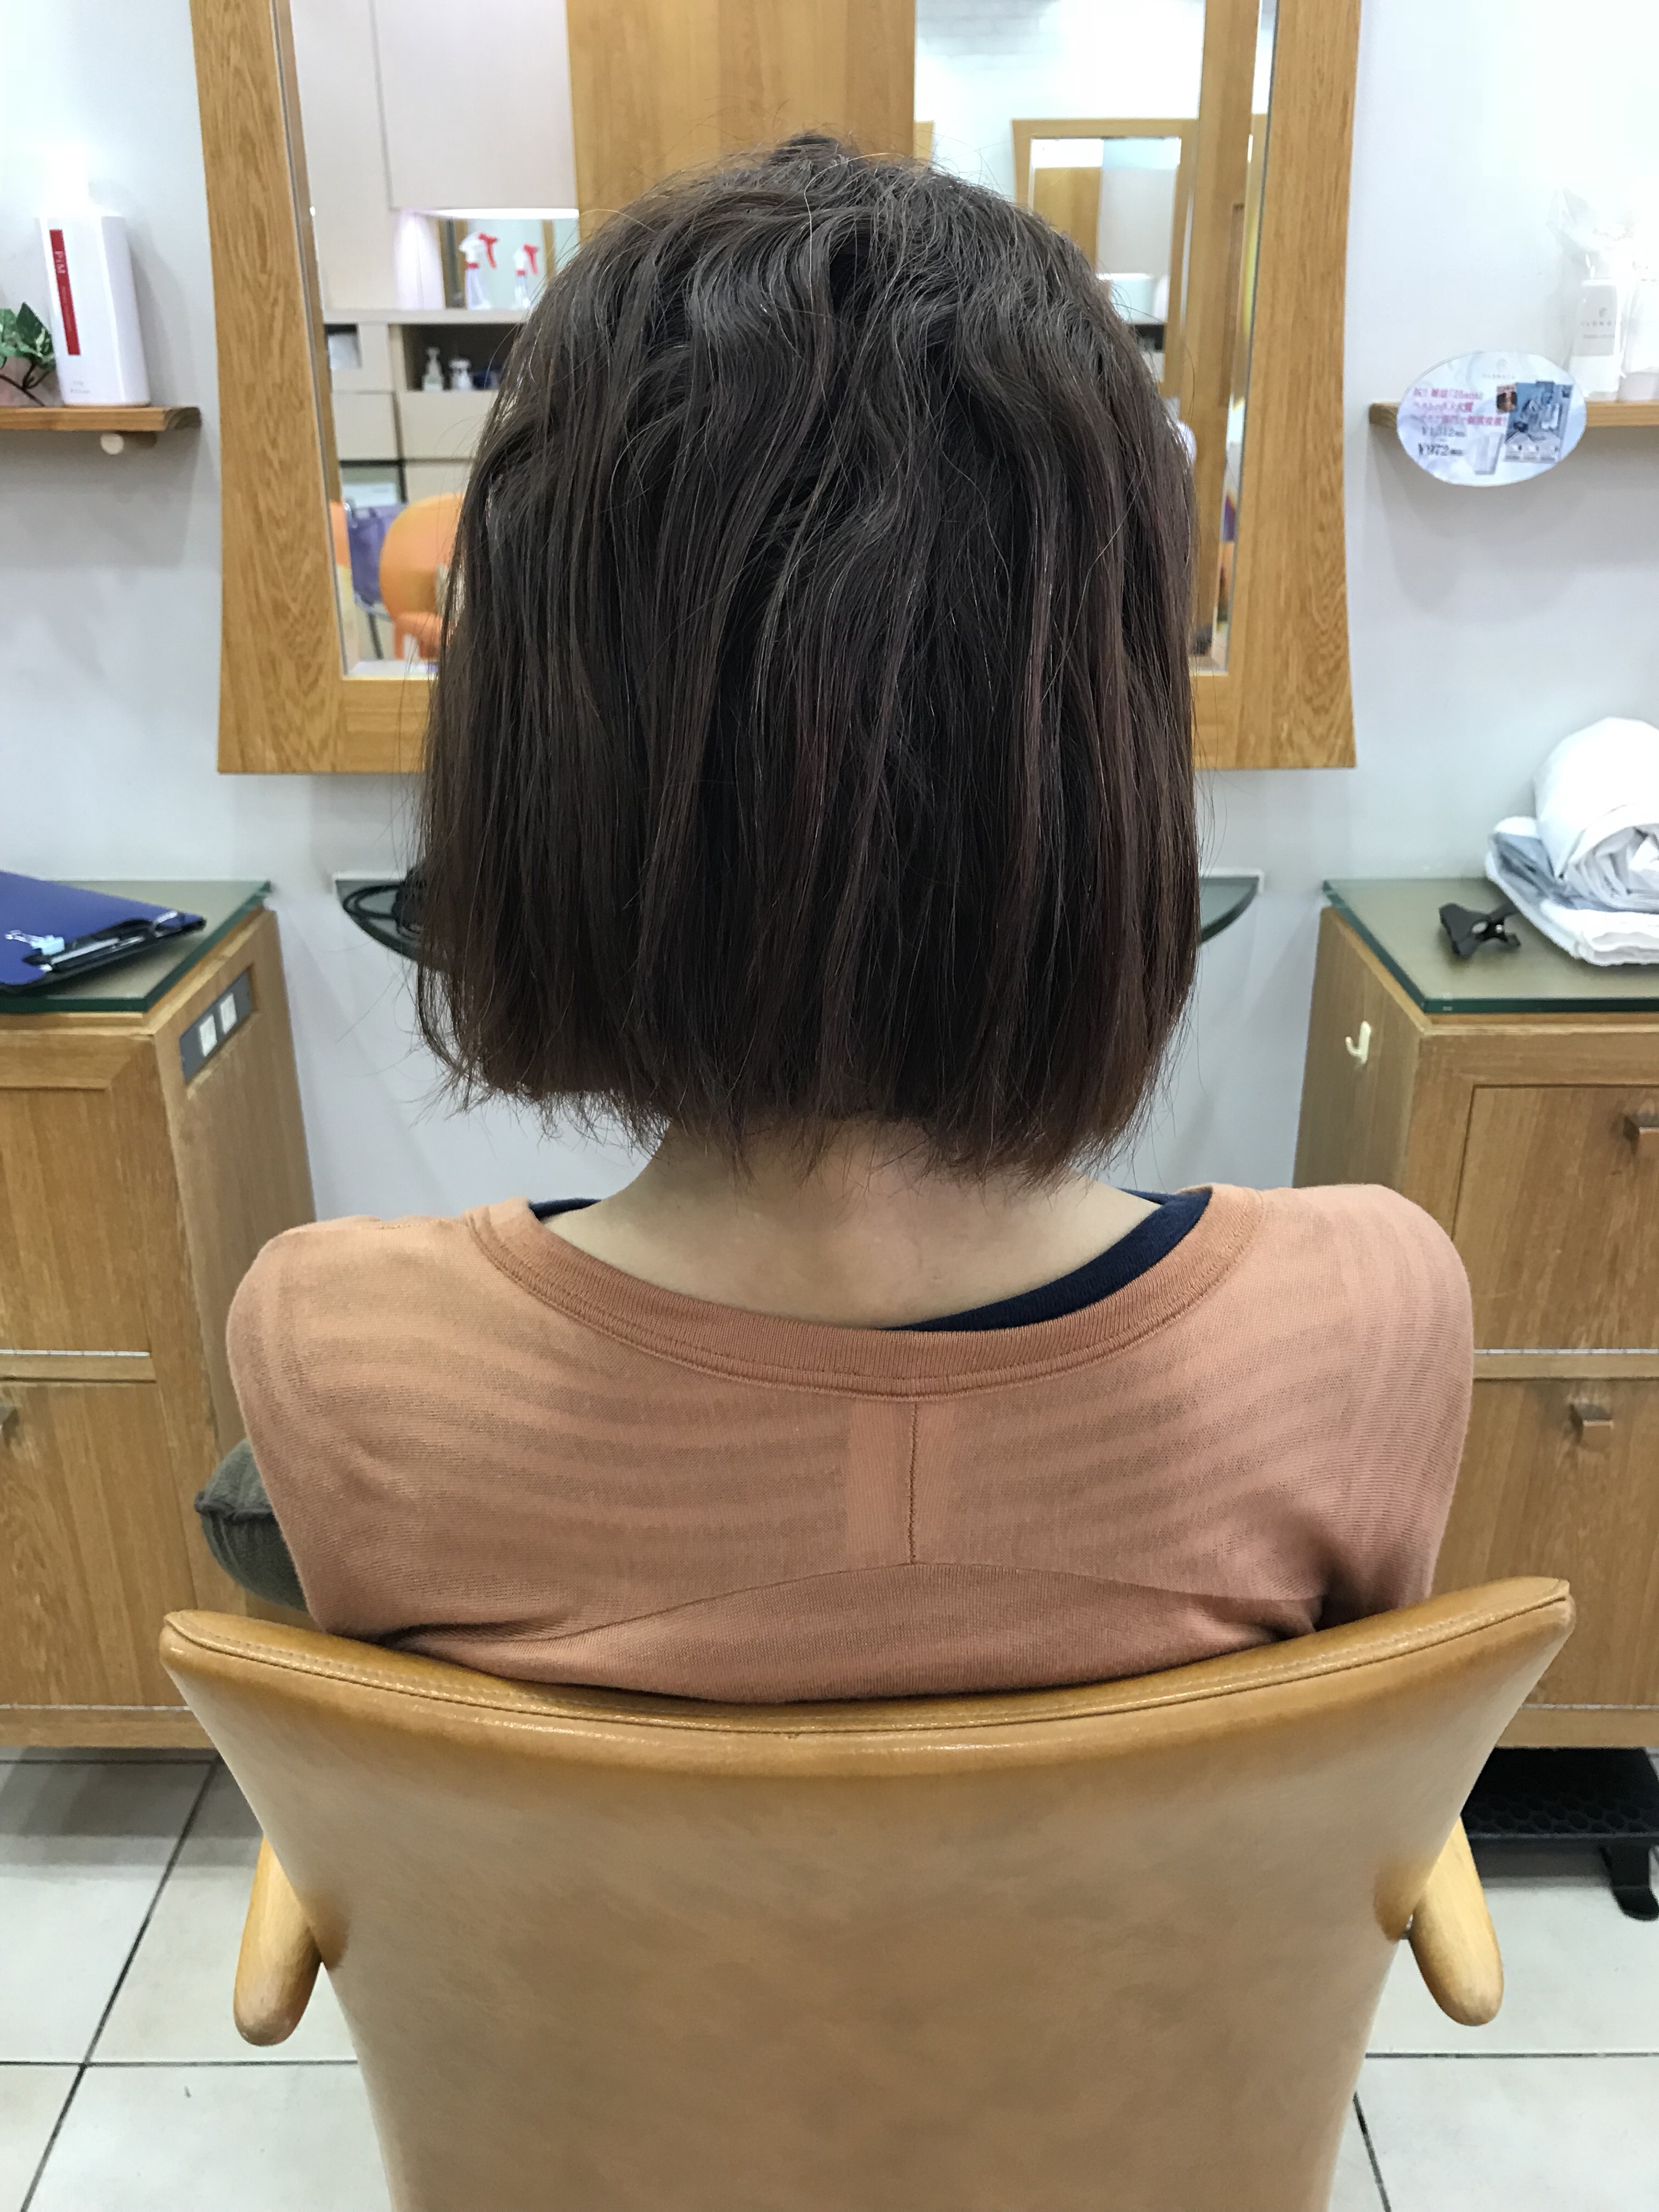 縮毛矯正は基本的に根元の伸びた所だけしかやらない理由美容室due三鷹店東京 エアーストレート ノンアイロン弱酸性縮毛矯正 はくせ毛でお悩みの方に自然なスタイルを提供します